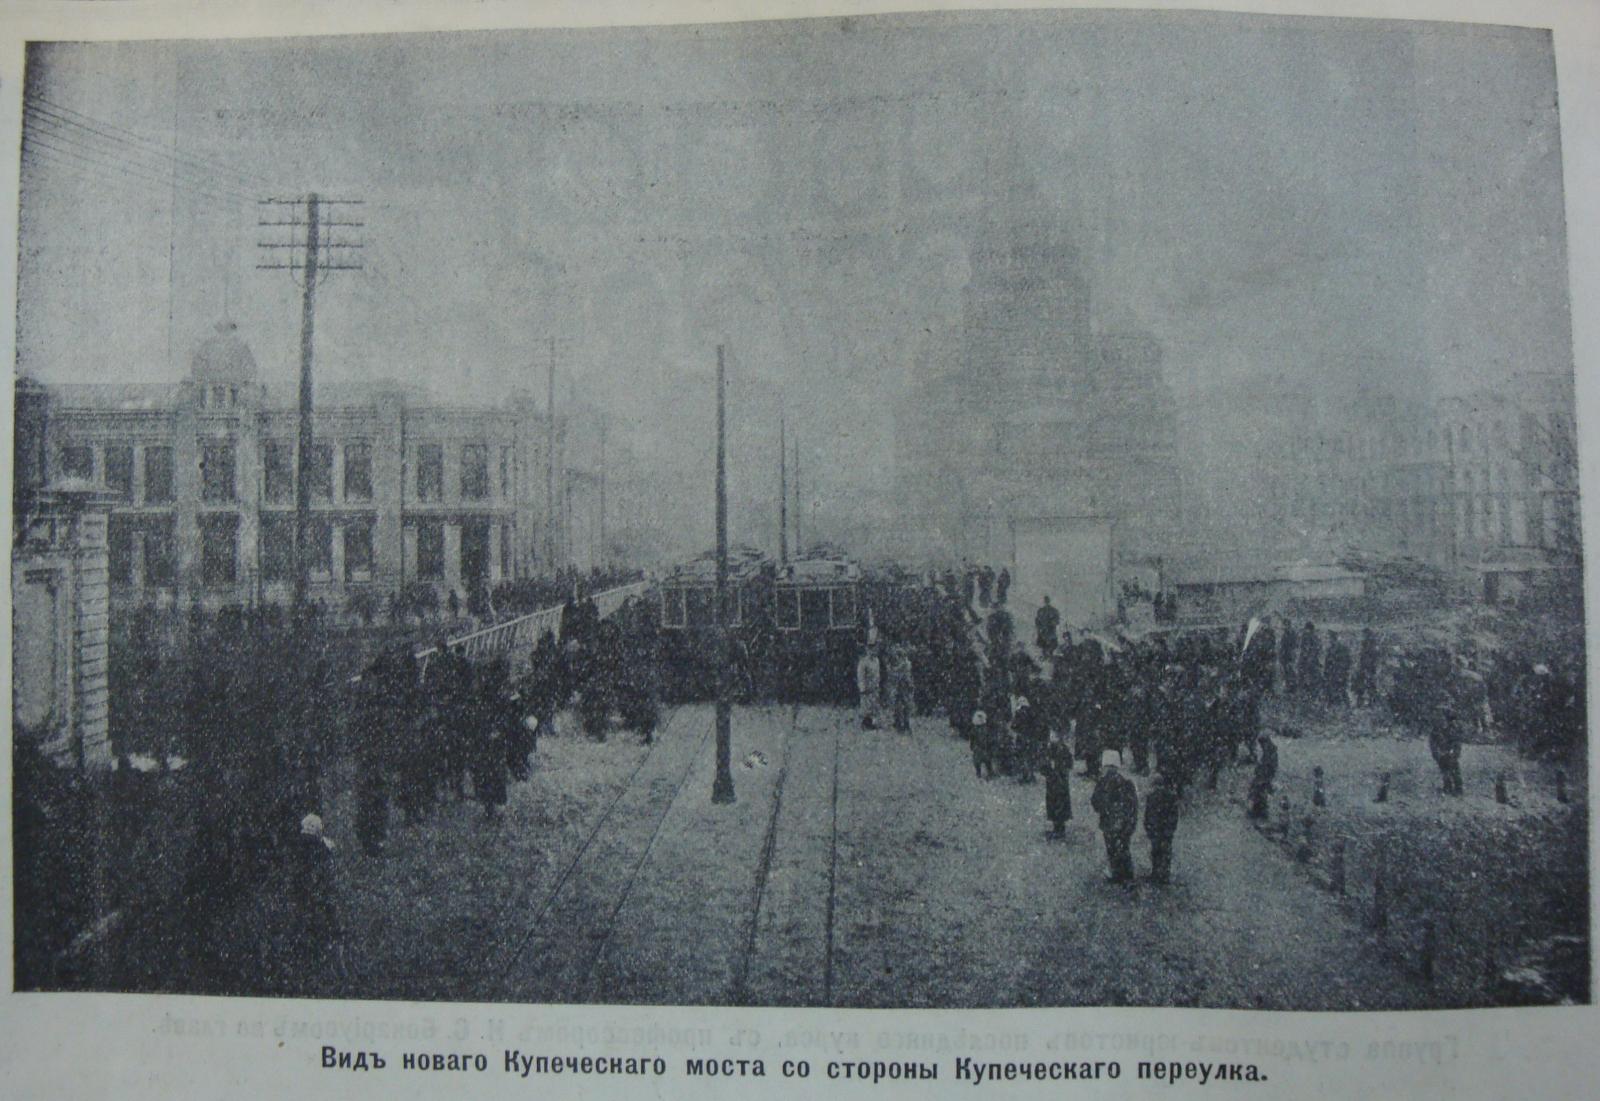 Фото из «Иллюстрированного прибавления» к «Южному краю» от 6.12.1909 г.